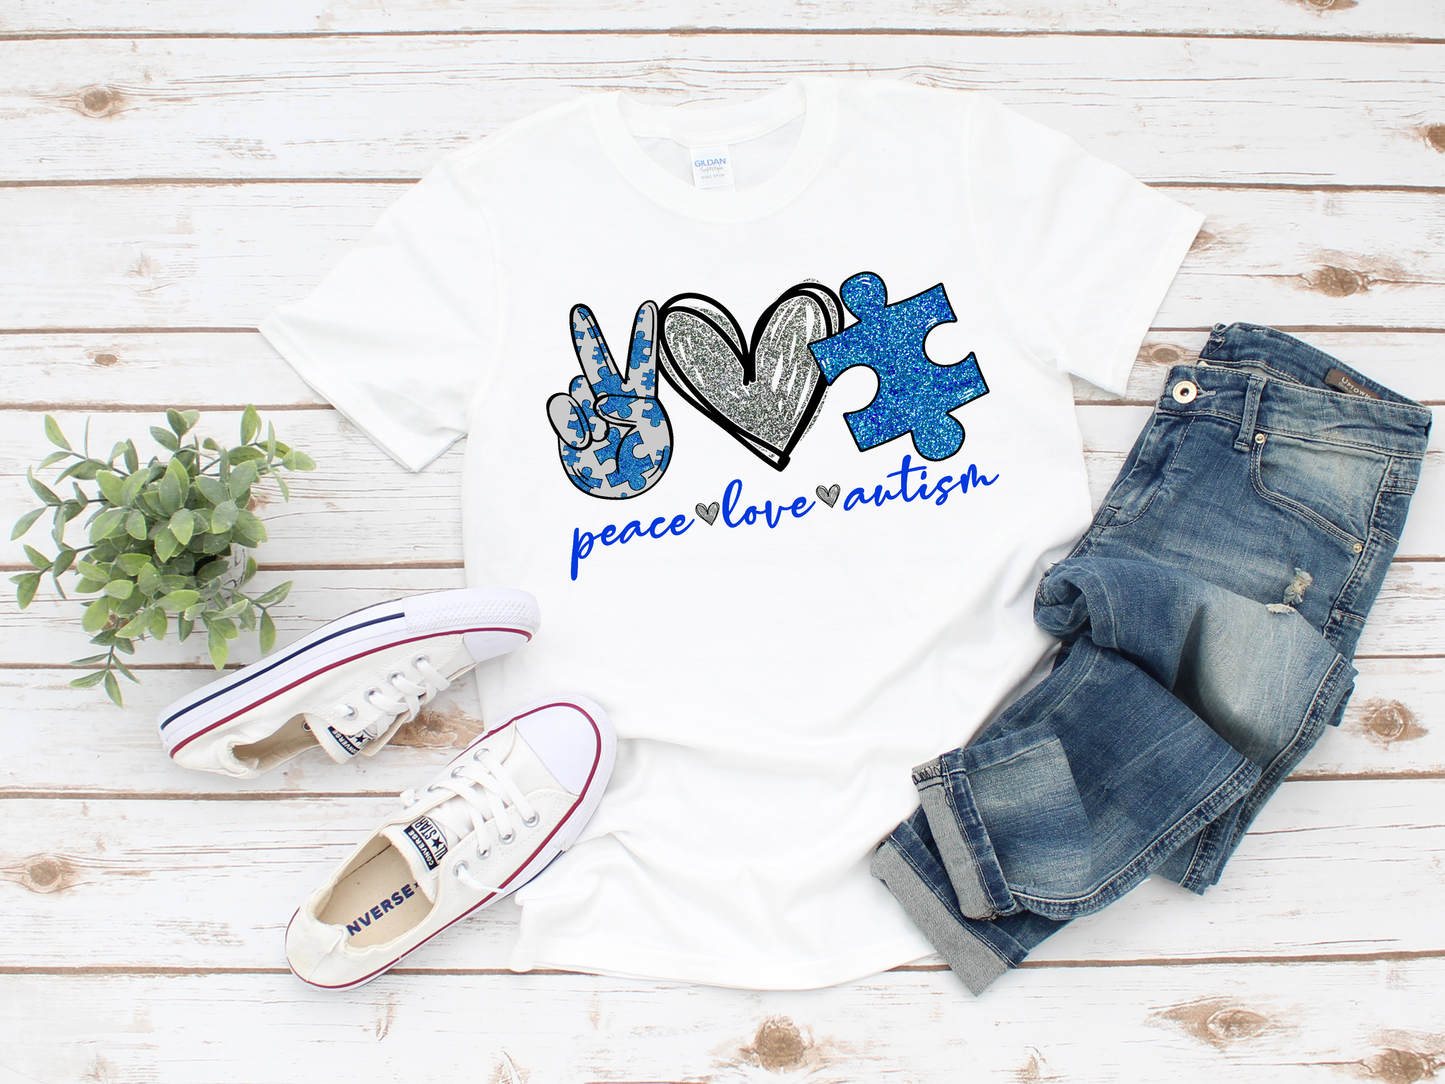 Peace Love Autism Shirt